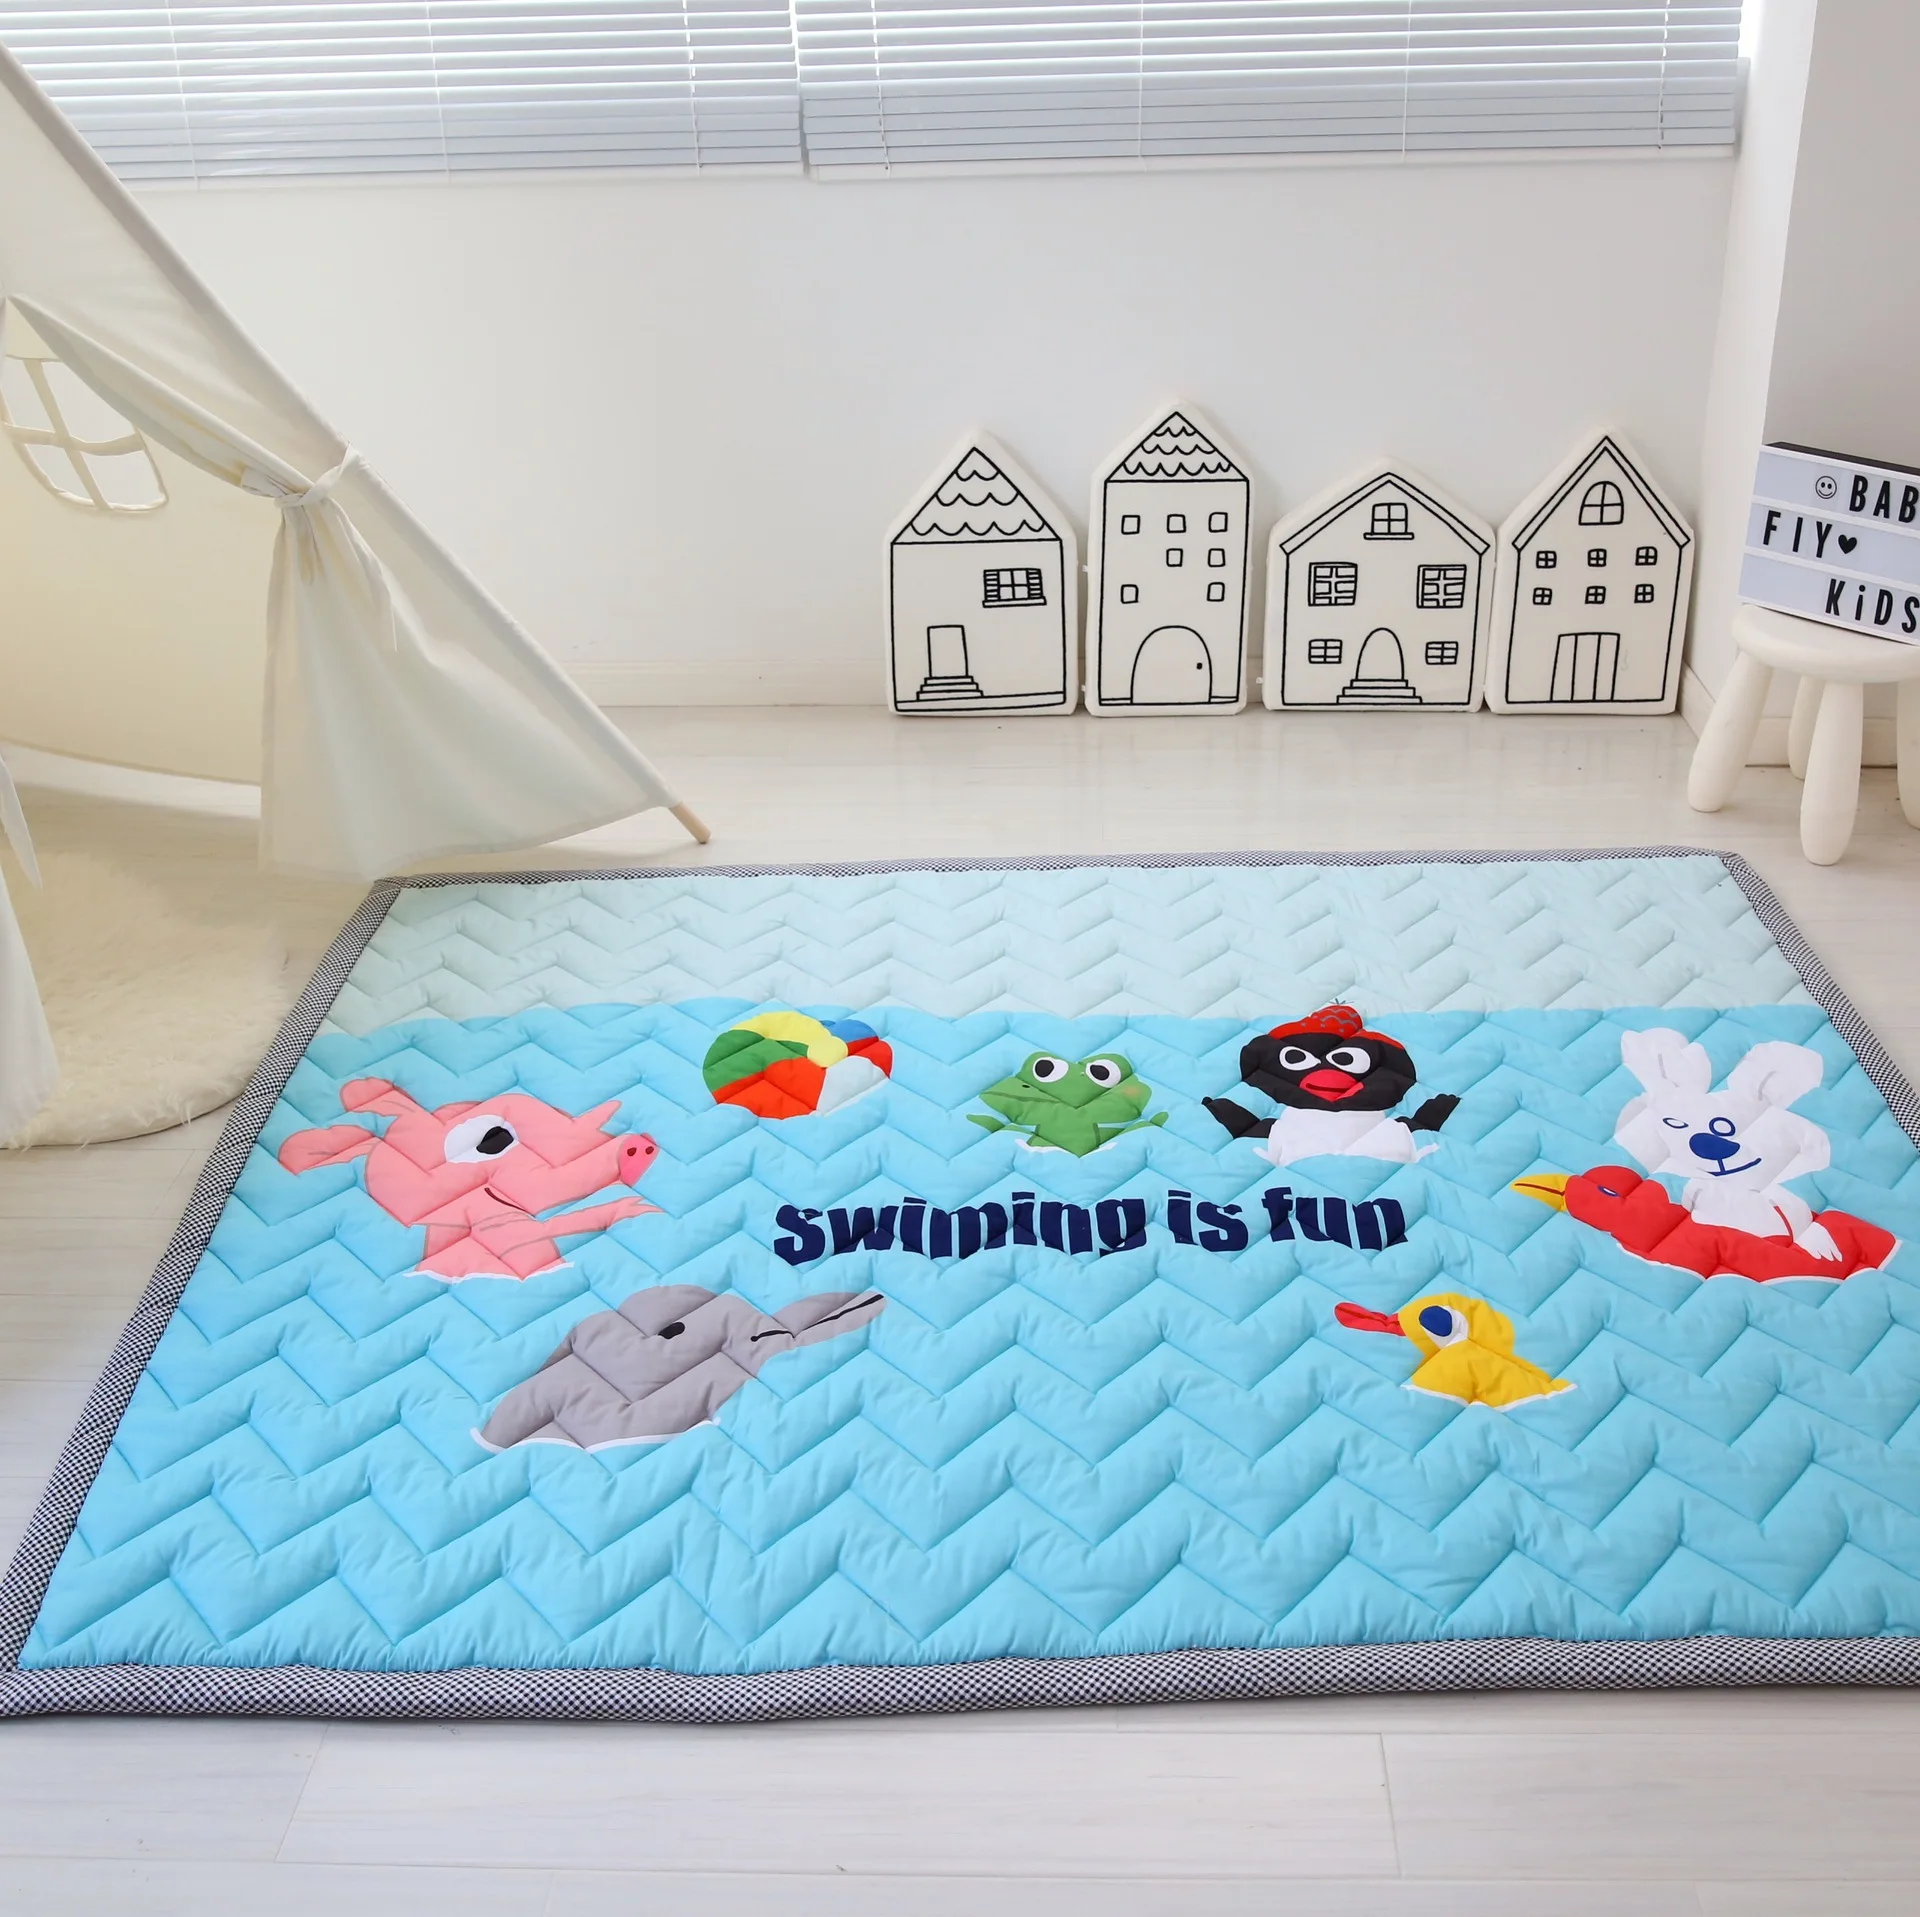 Ins мультяшный коврик мягкий складной детский коврик для лазания детское сиденье игровой игрушечный планшет одеяло